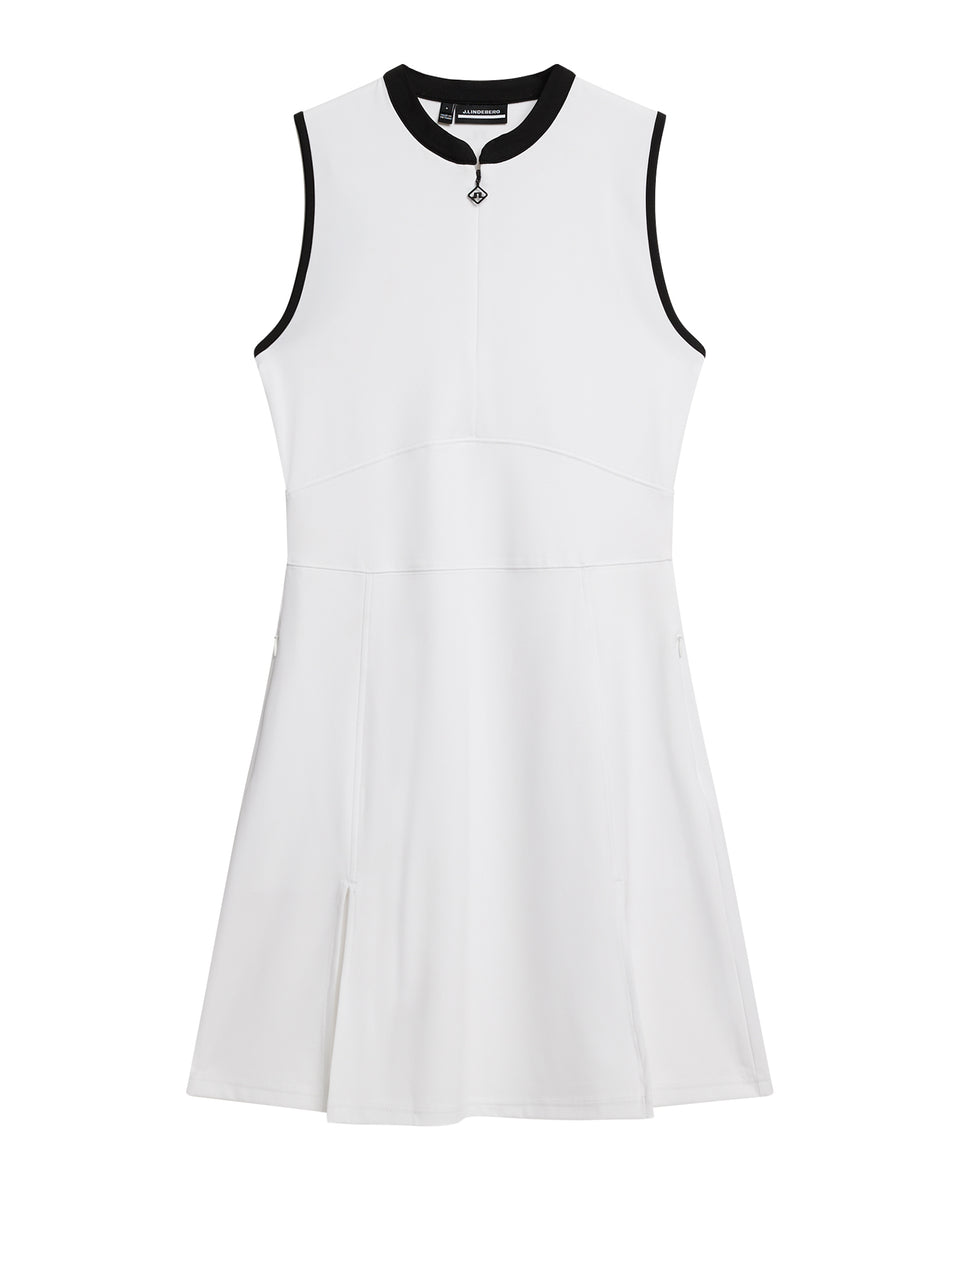 Ebony Dress / White